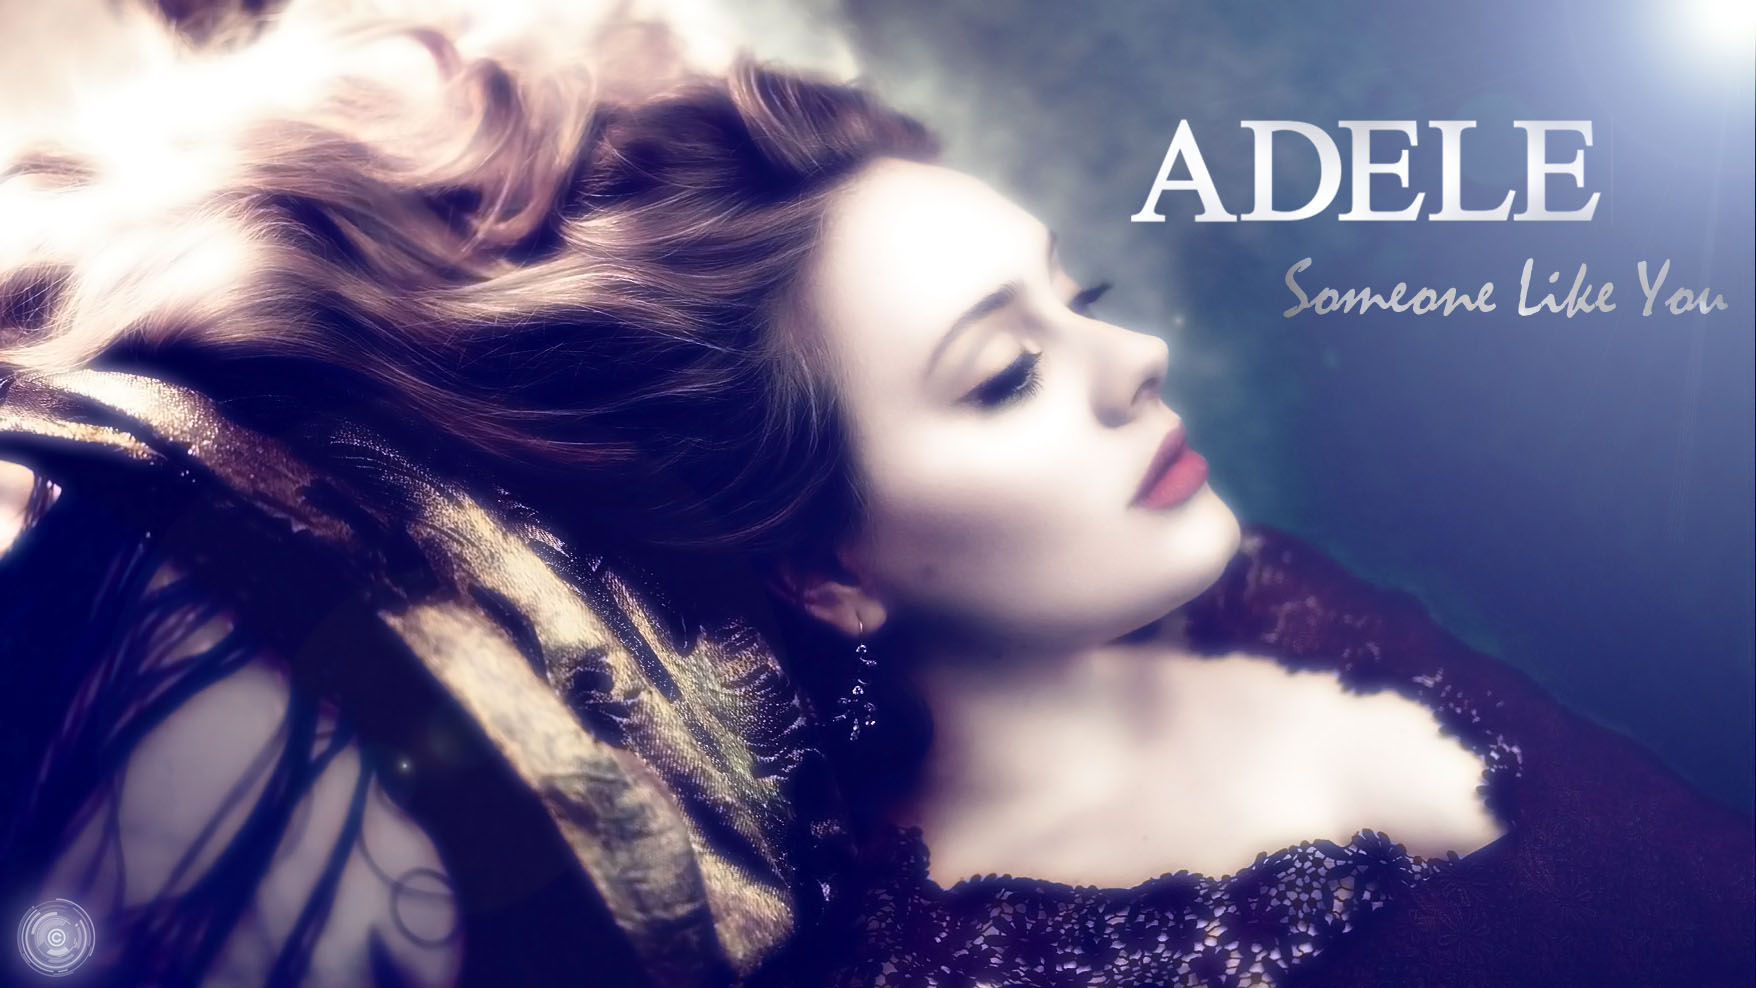 Someone Like You - Adele by BaptisteWSF on DeviantArt